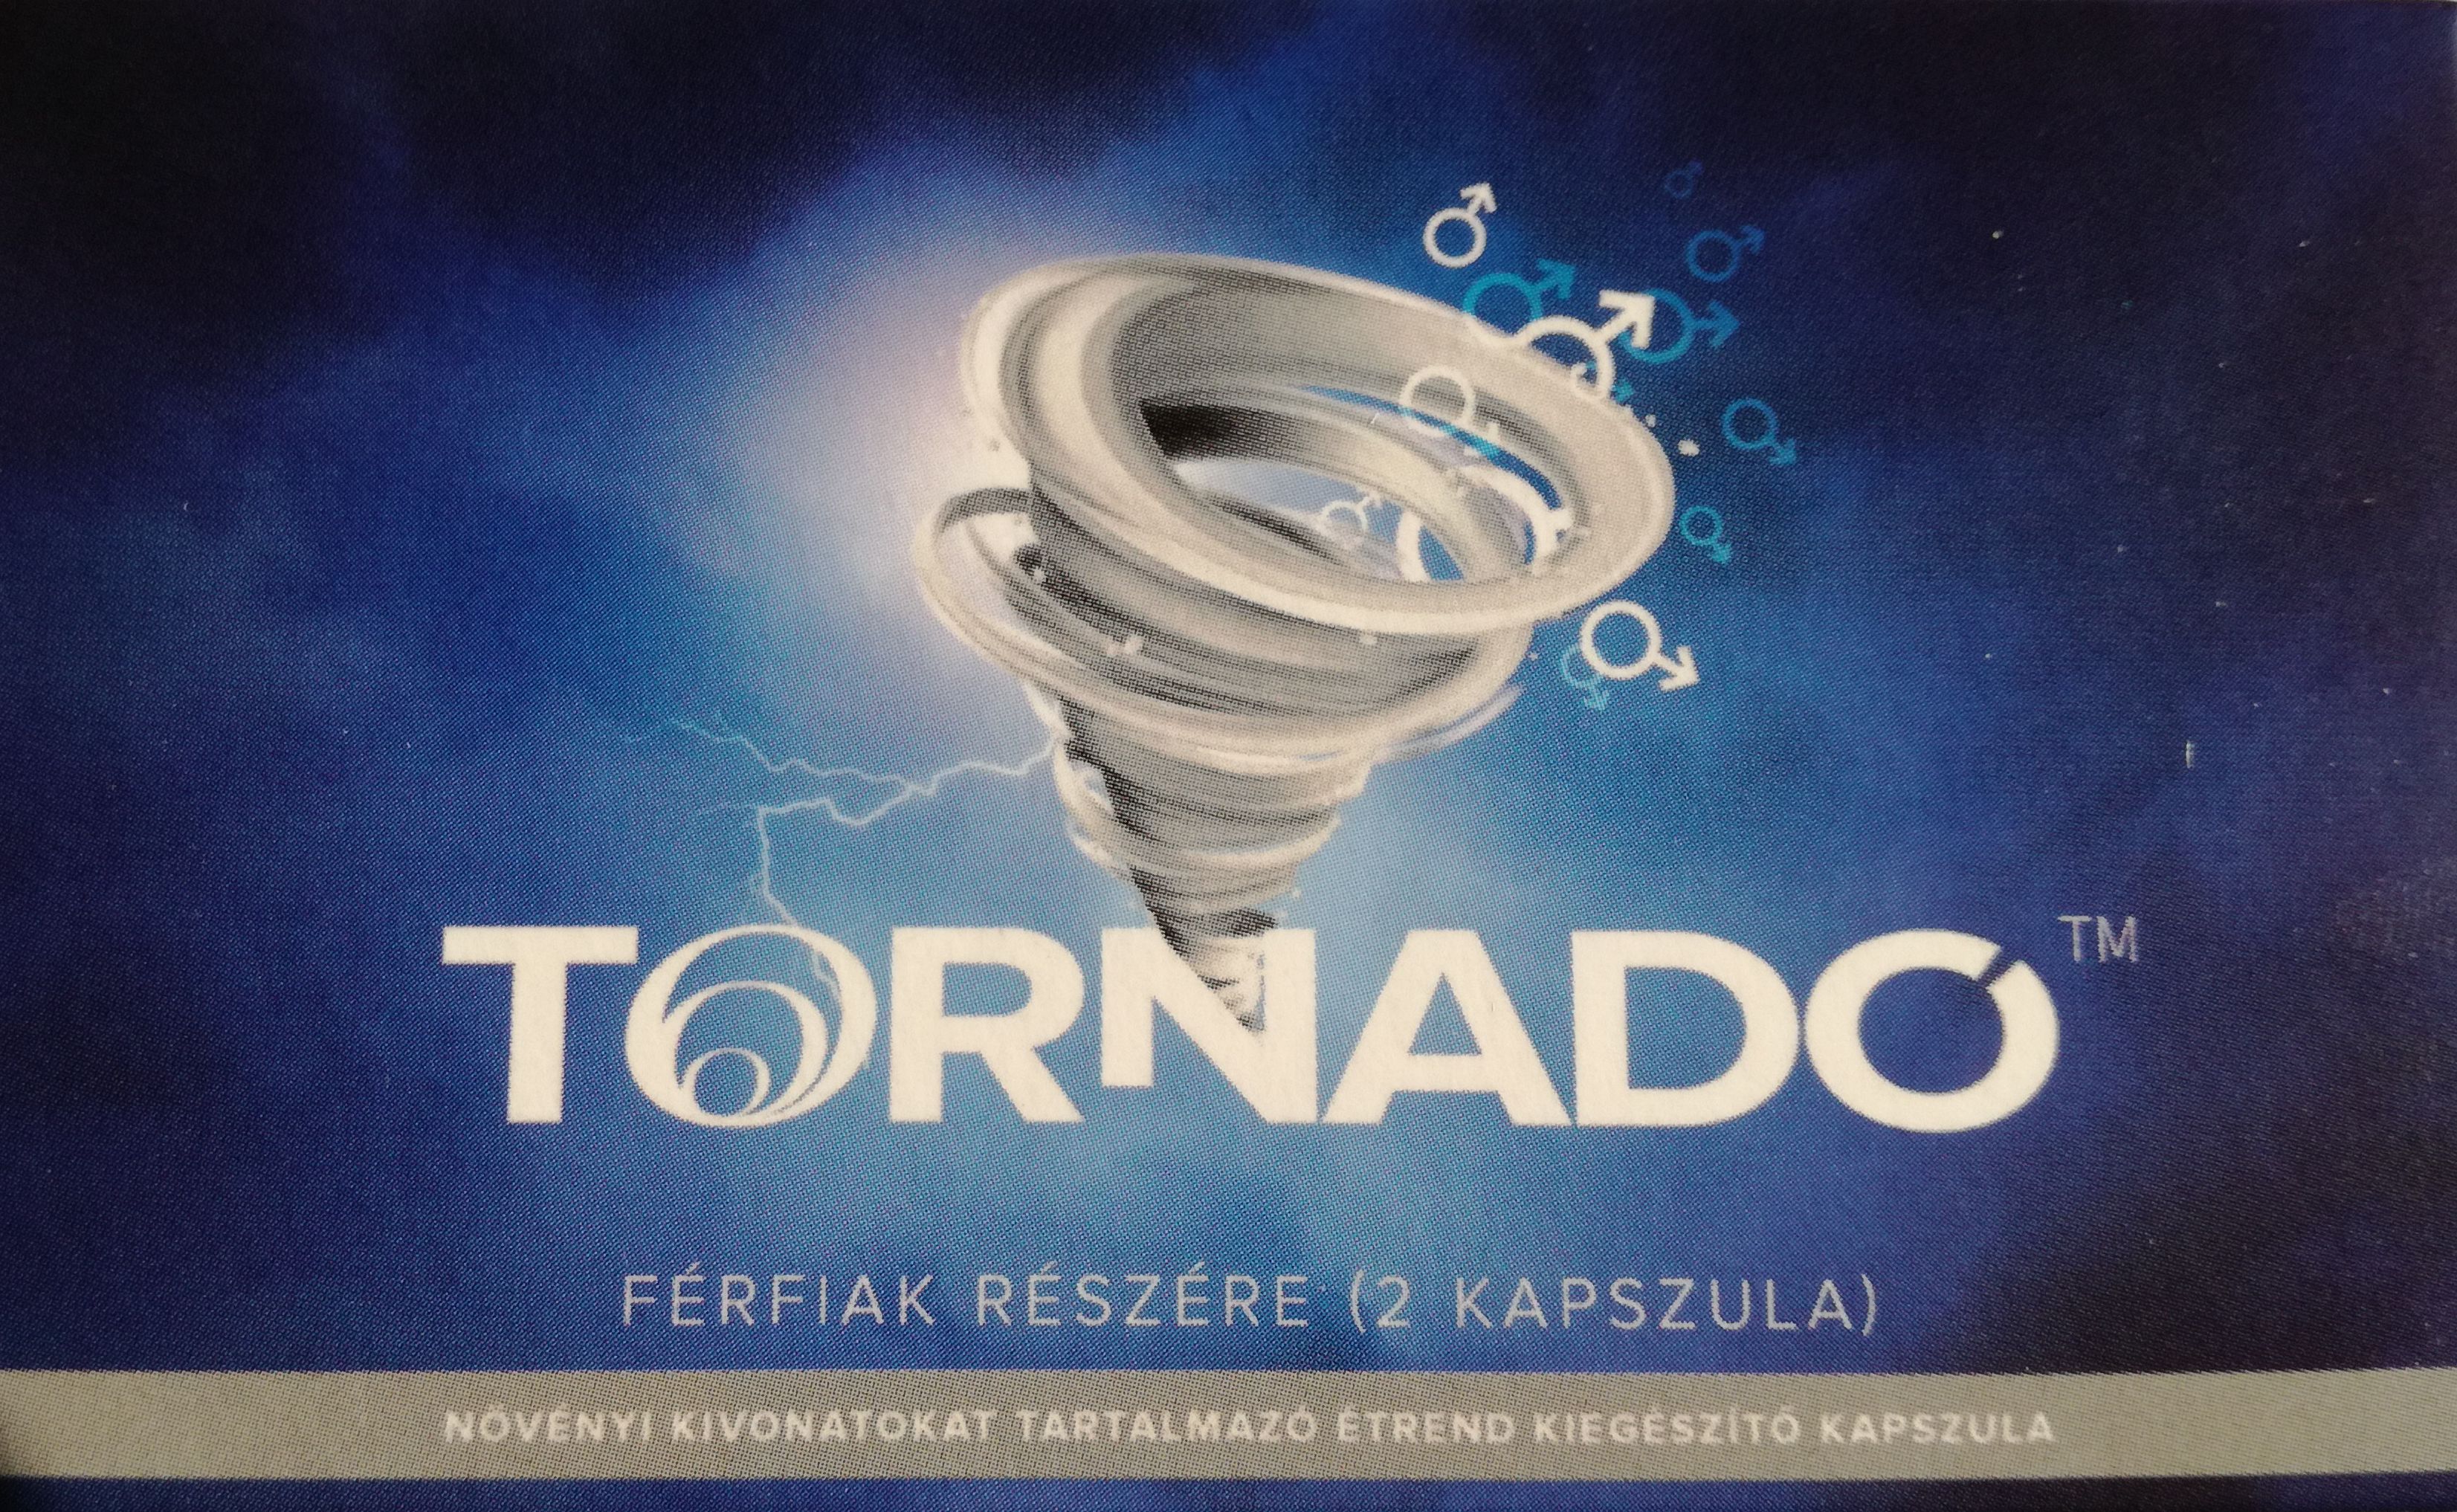 Tornado férfiak részére növényi kivonatokat tartalmazó étrend-kiegészítő kapszula (2 kapszula)